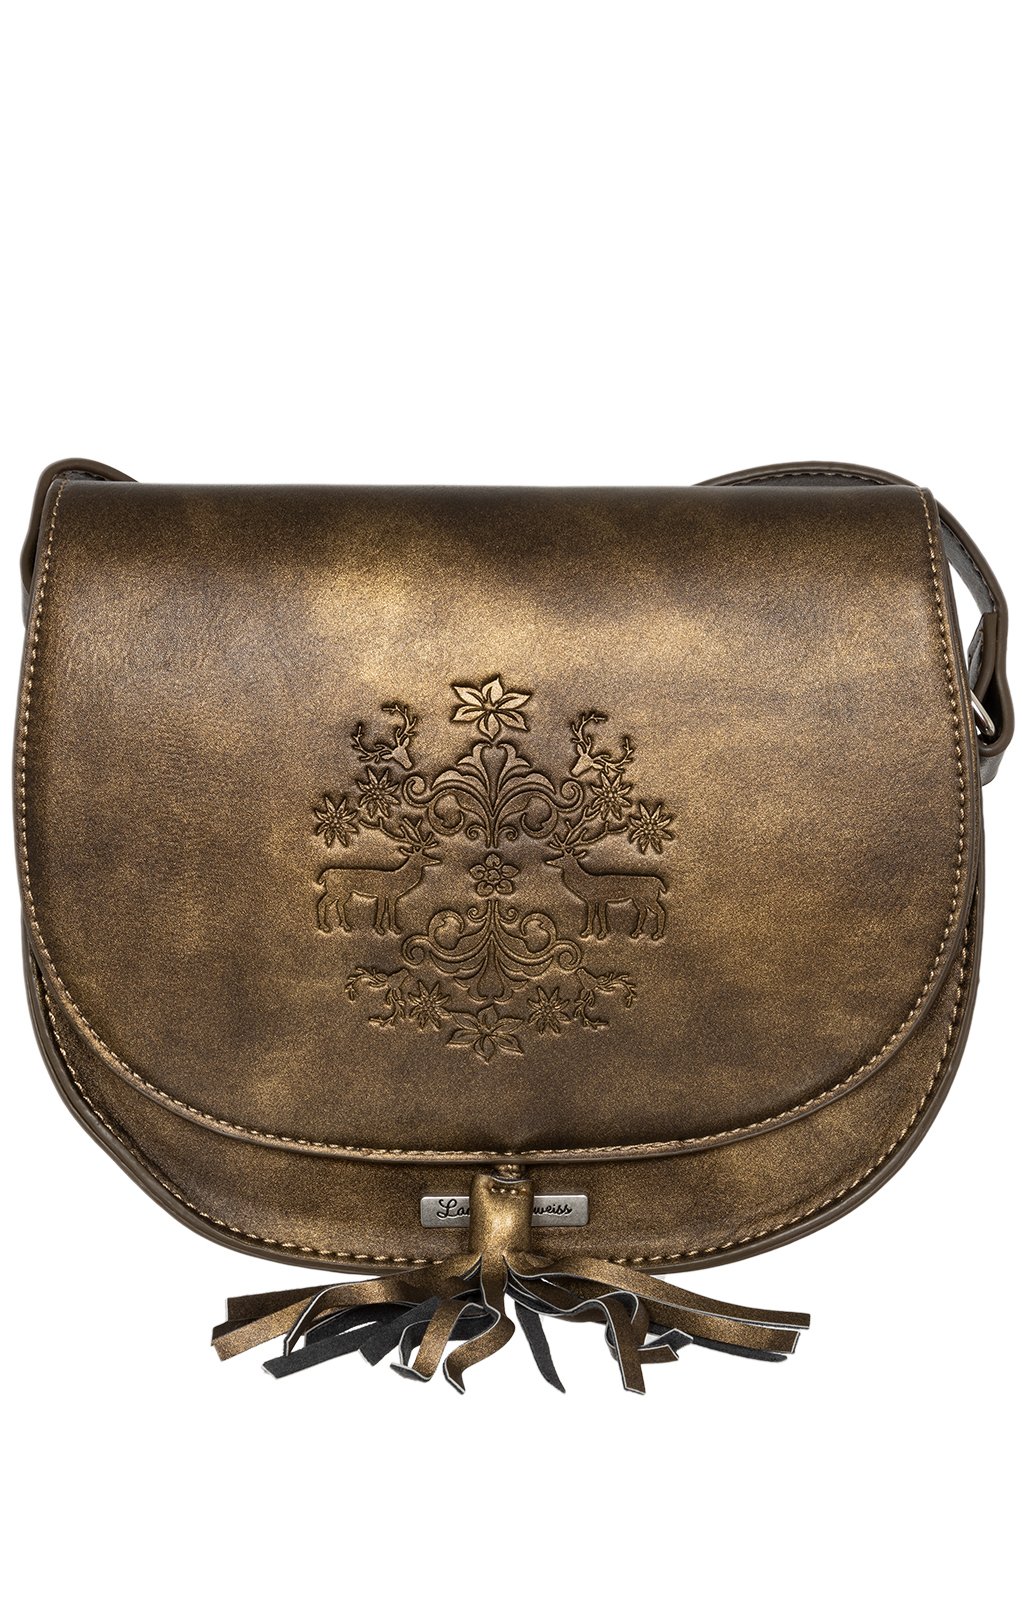 Trachtentasche 13102 antik braun von Lady Edelweiss